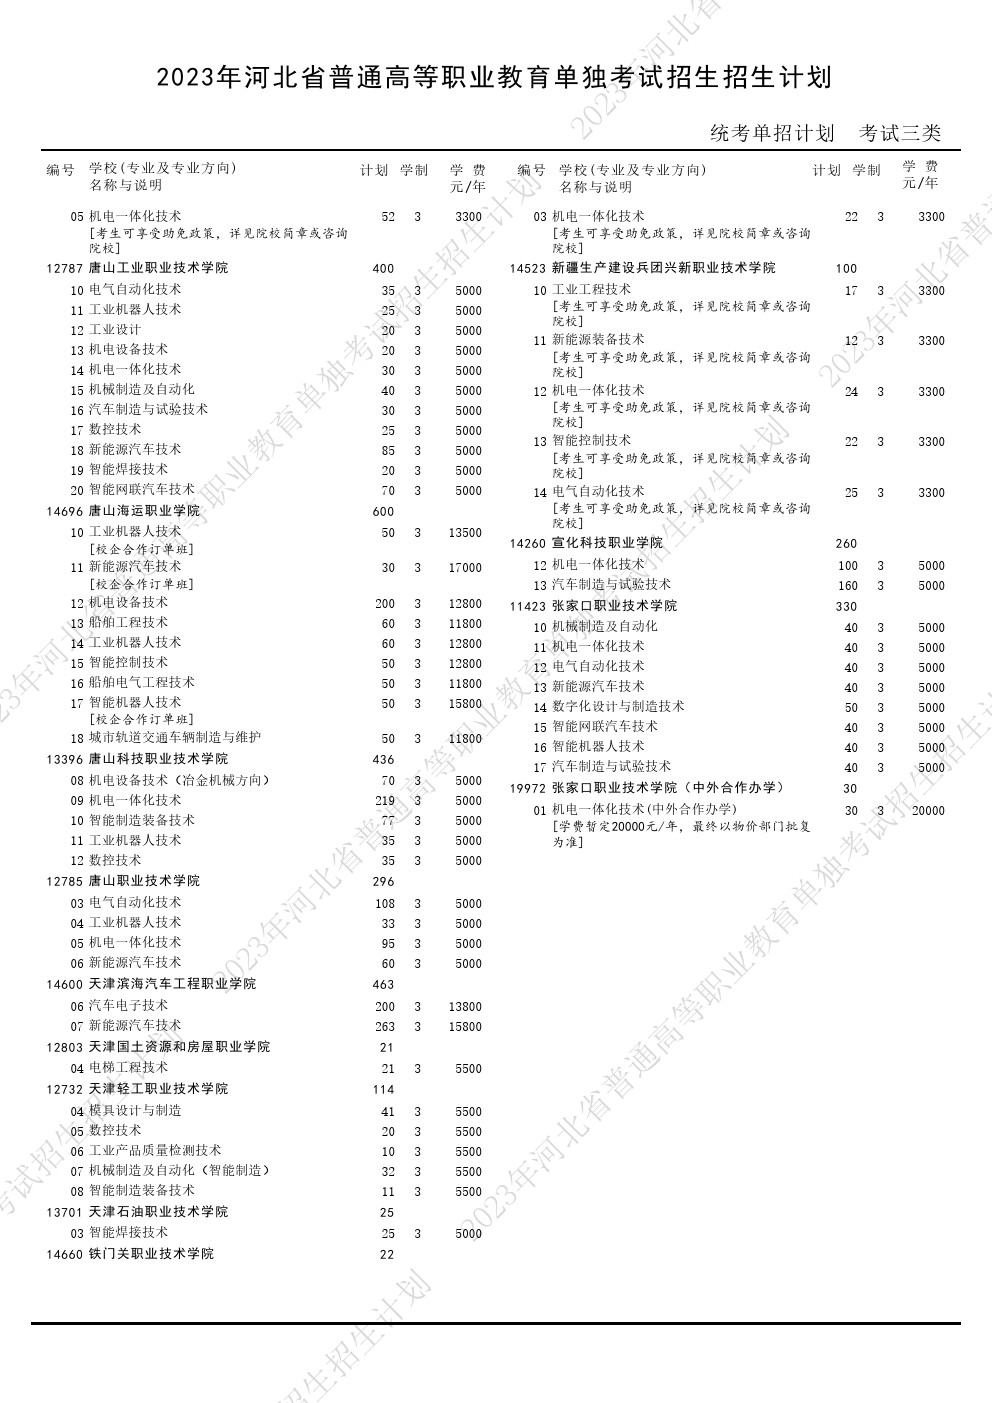 2023年河北省高职单招考试三类招生计划